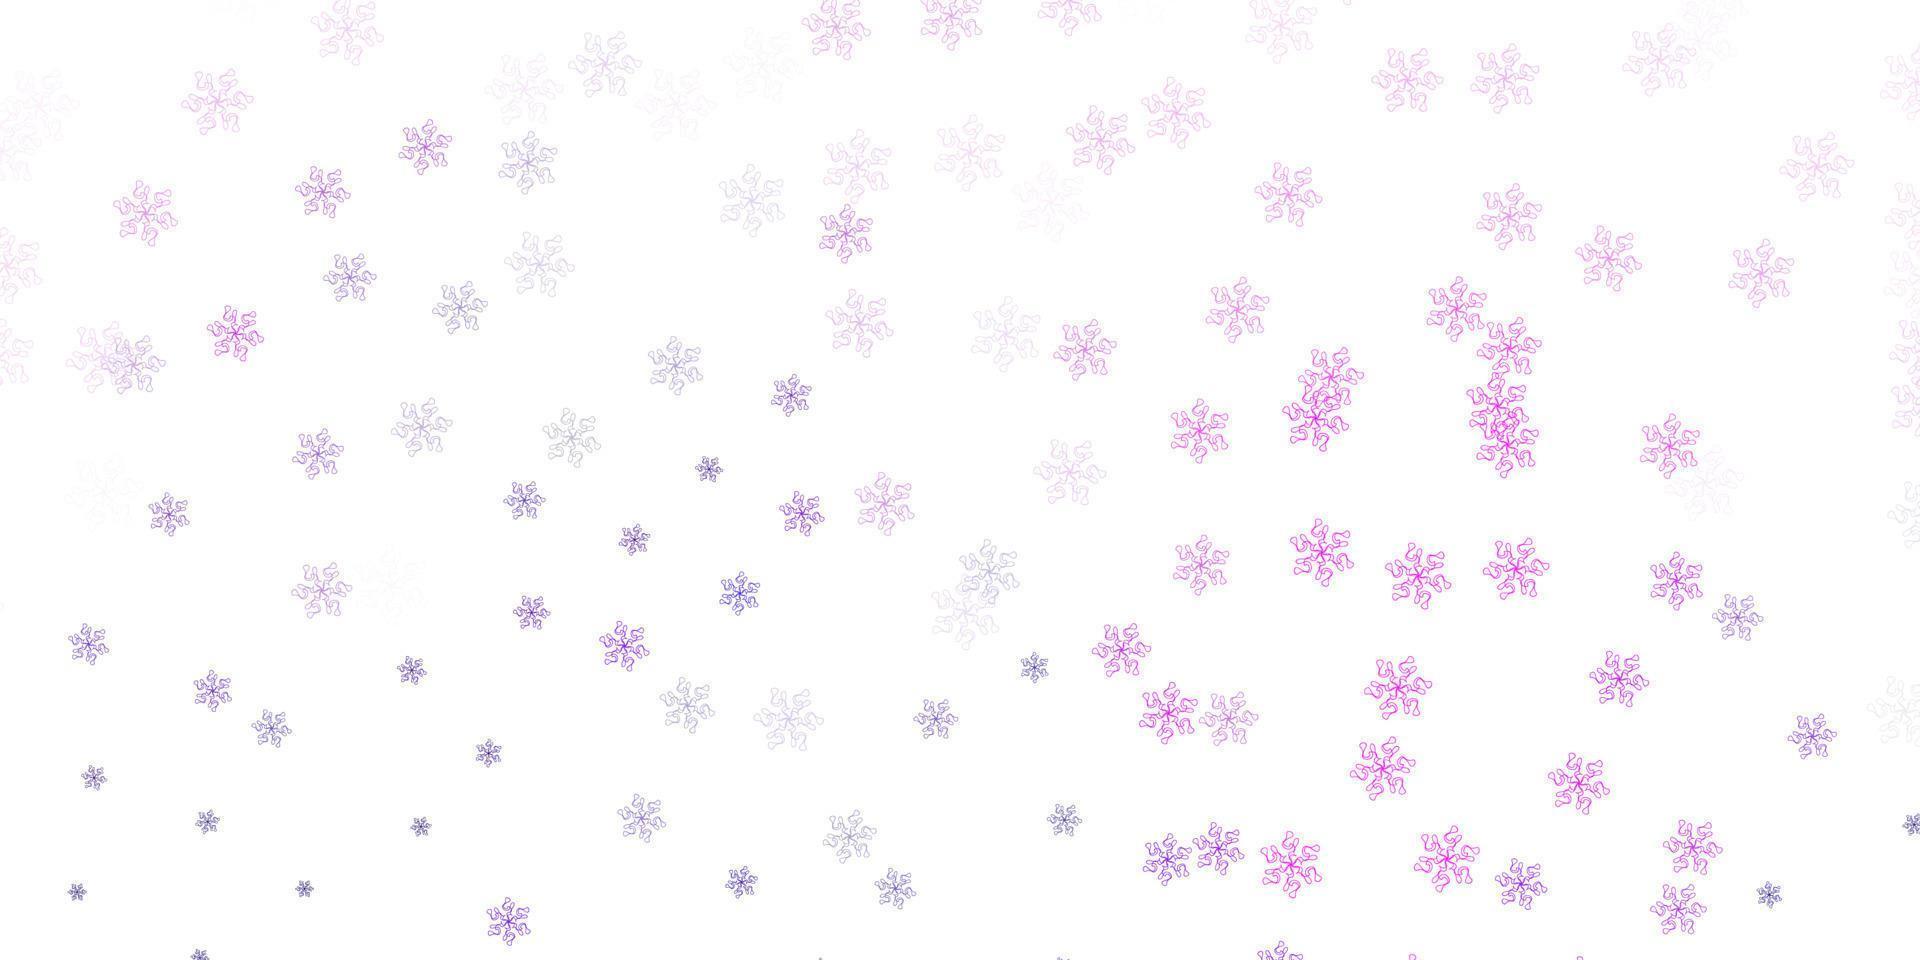 sfondo doodle vettoriale viola chiaro con fiori.